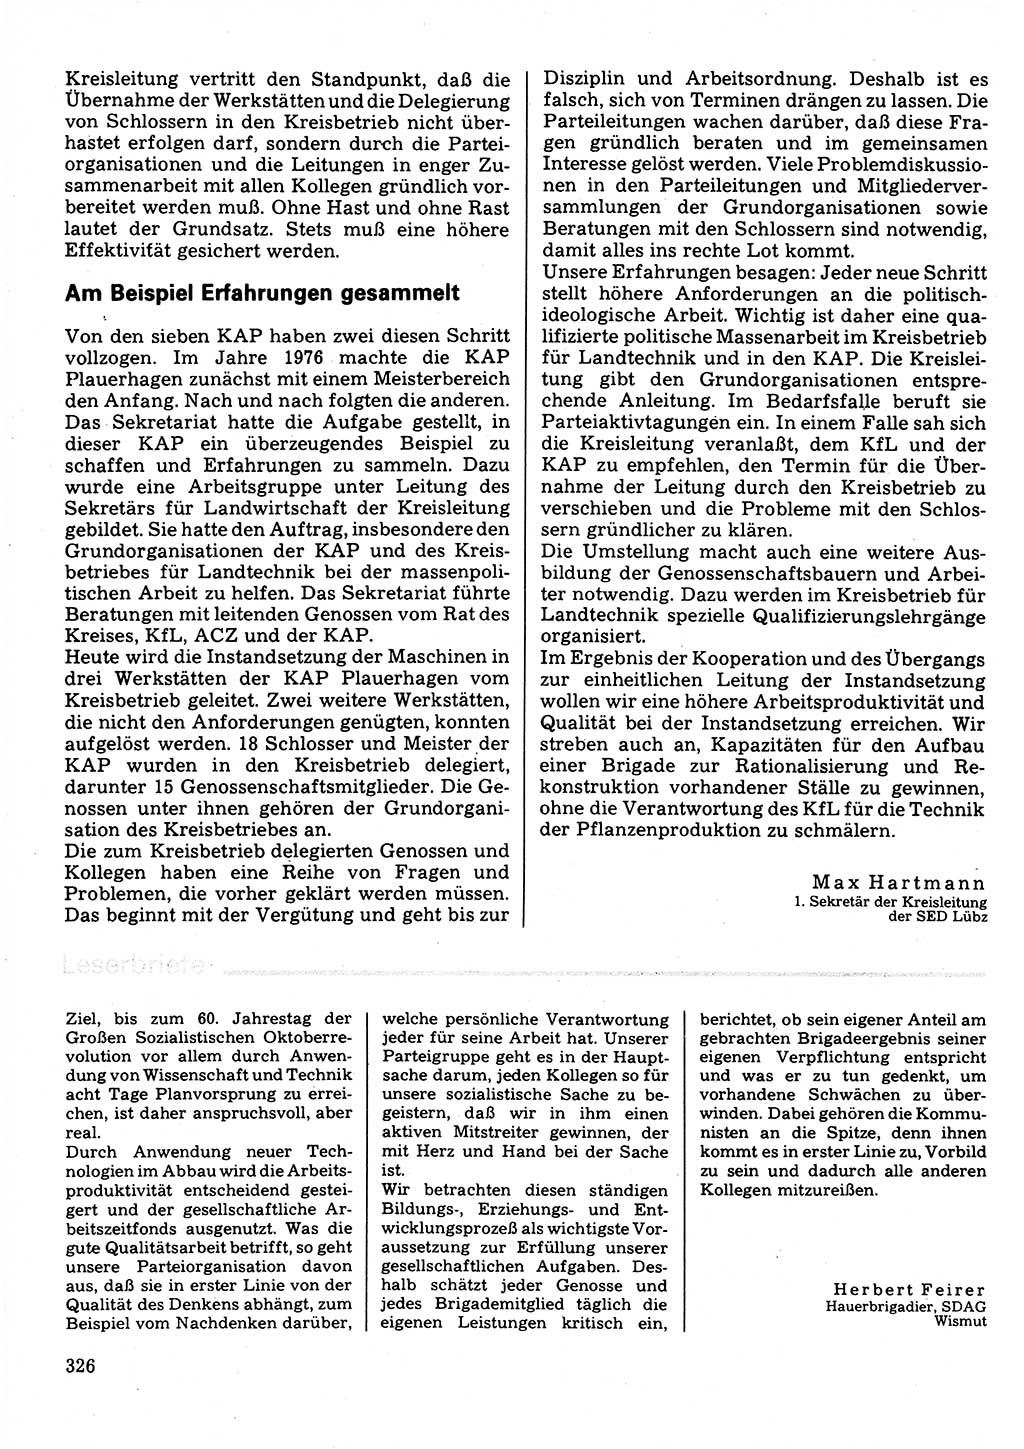 Neuer Weg (NW), Organ des Zentralkomitees (ZK) der SED (Sozialistische Einheitspartei Deutschlands) für Fragen des Parteilebens, 32. Jahrgang [Deutsche Demokratische Republik (DDR)] 1977, Seite 326 (NW ZK SED DDR 1977, S. 326)